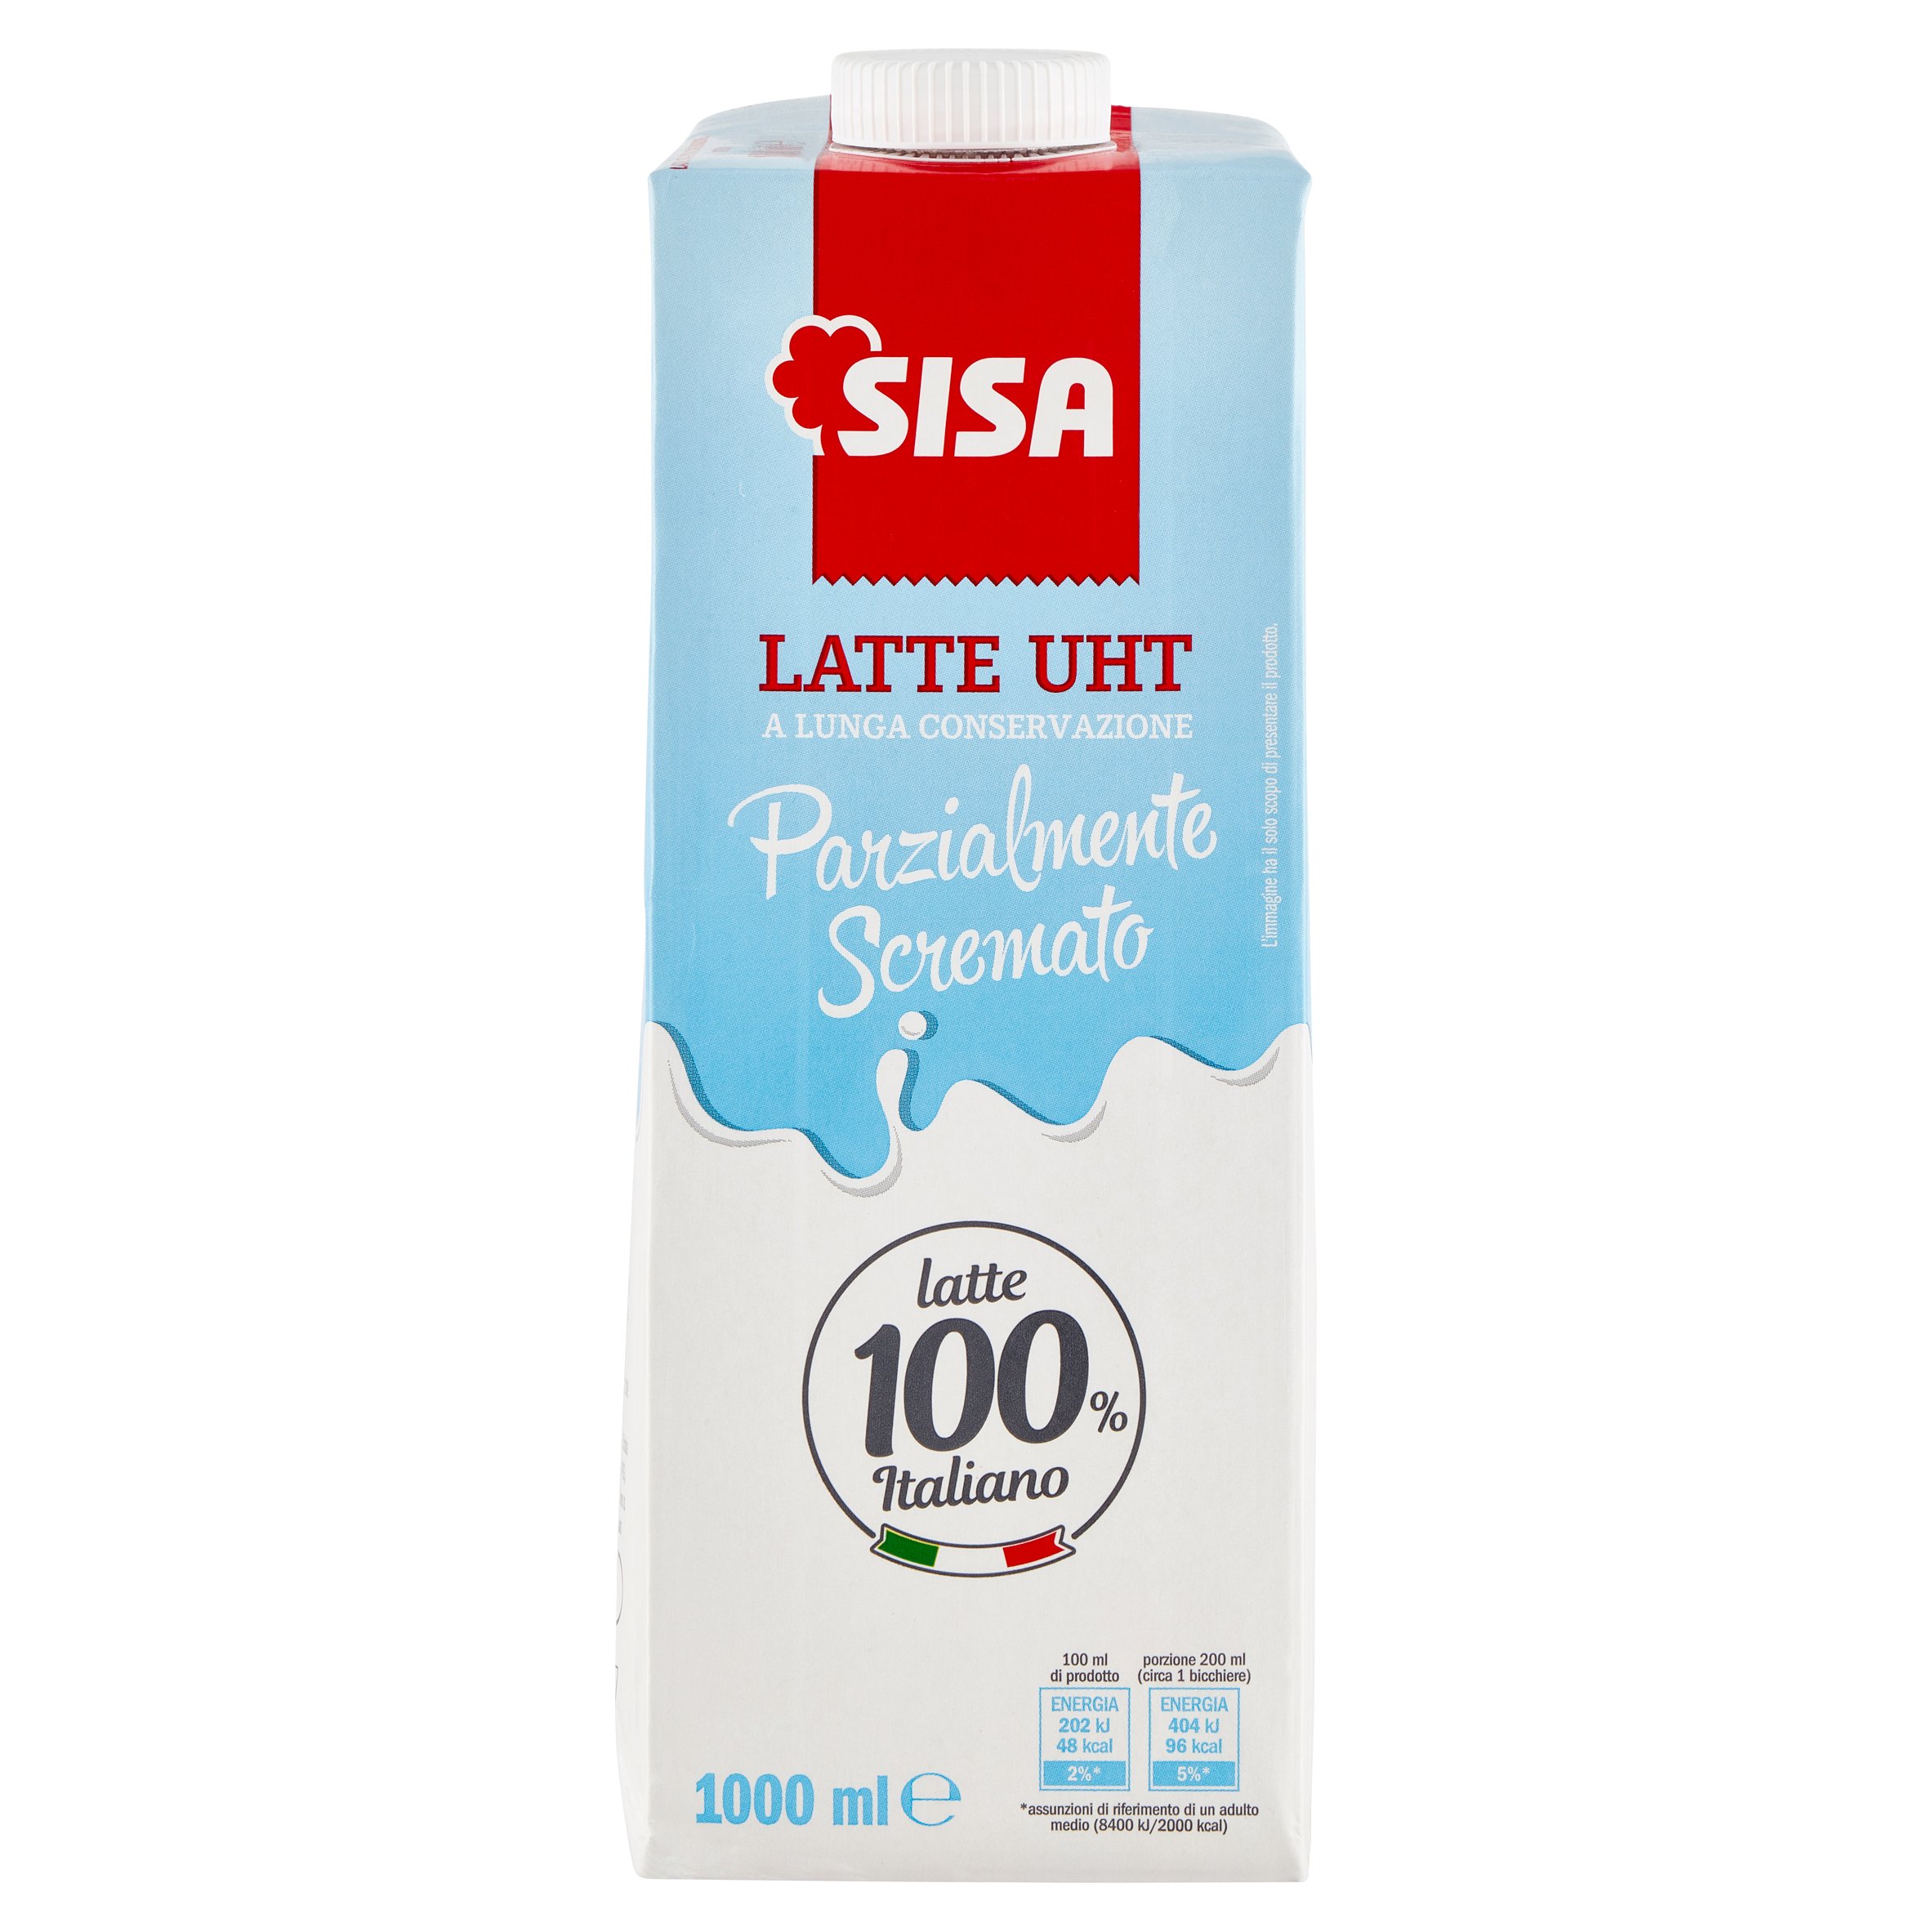 Sisa Latte UHT a Lunga Conservazione Parzialmente Scremato 1000 ml